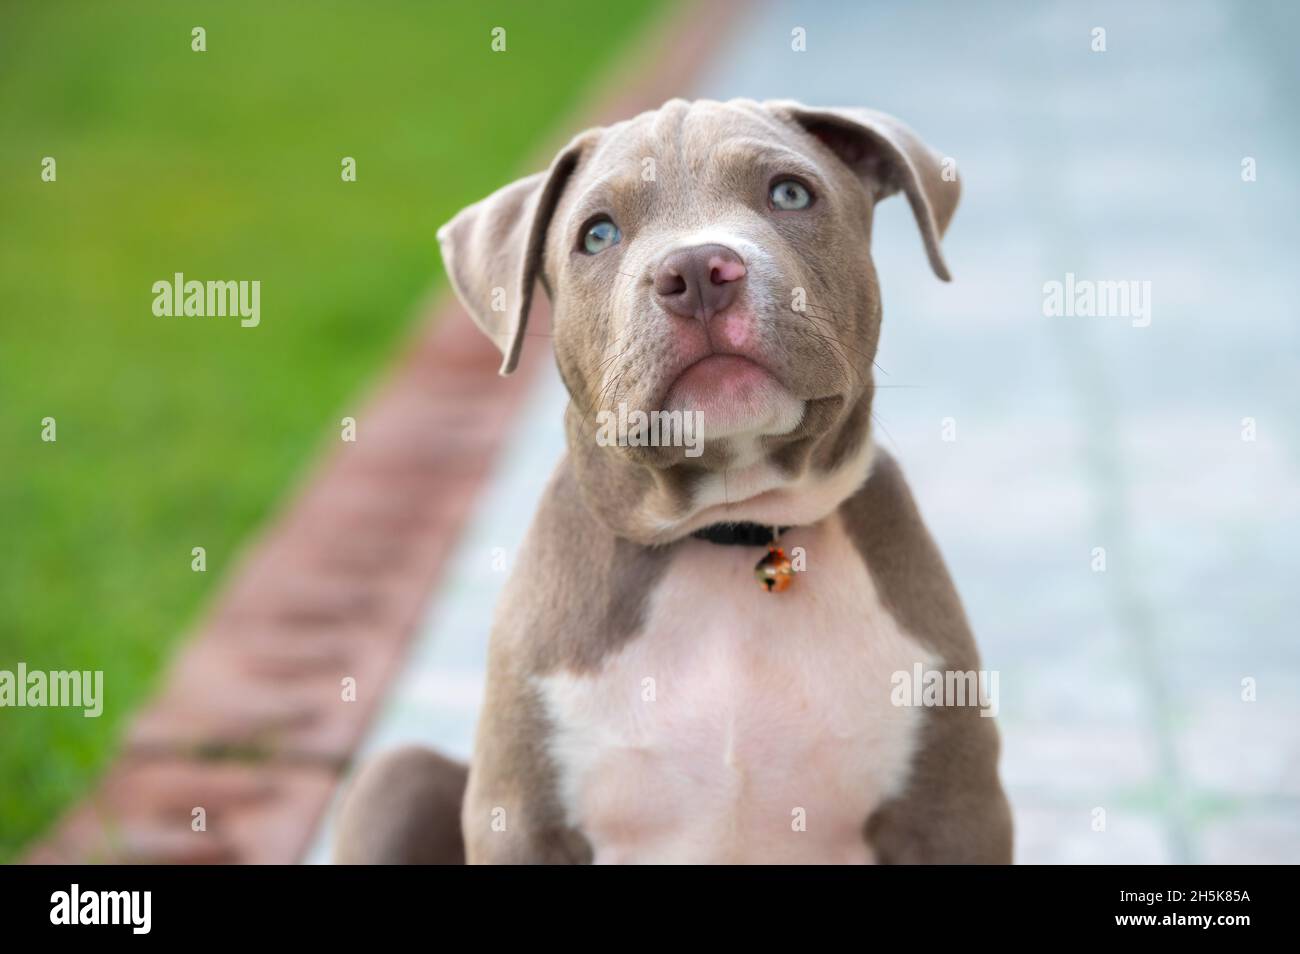 Cane mamma americano bully cucciolo cane, animale divertente e carino Foto Stock